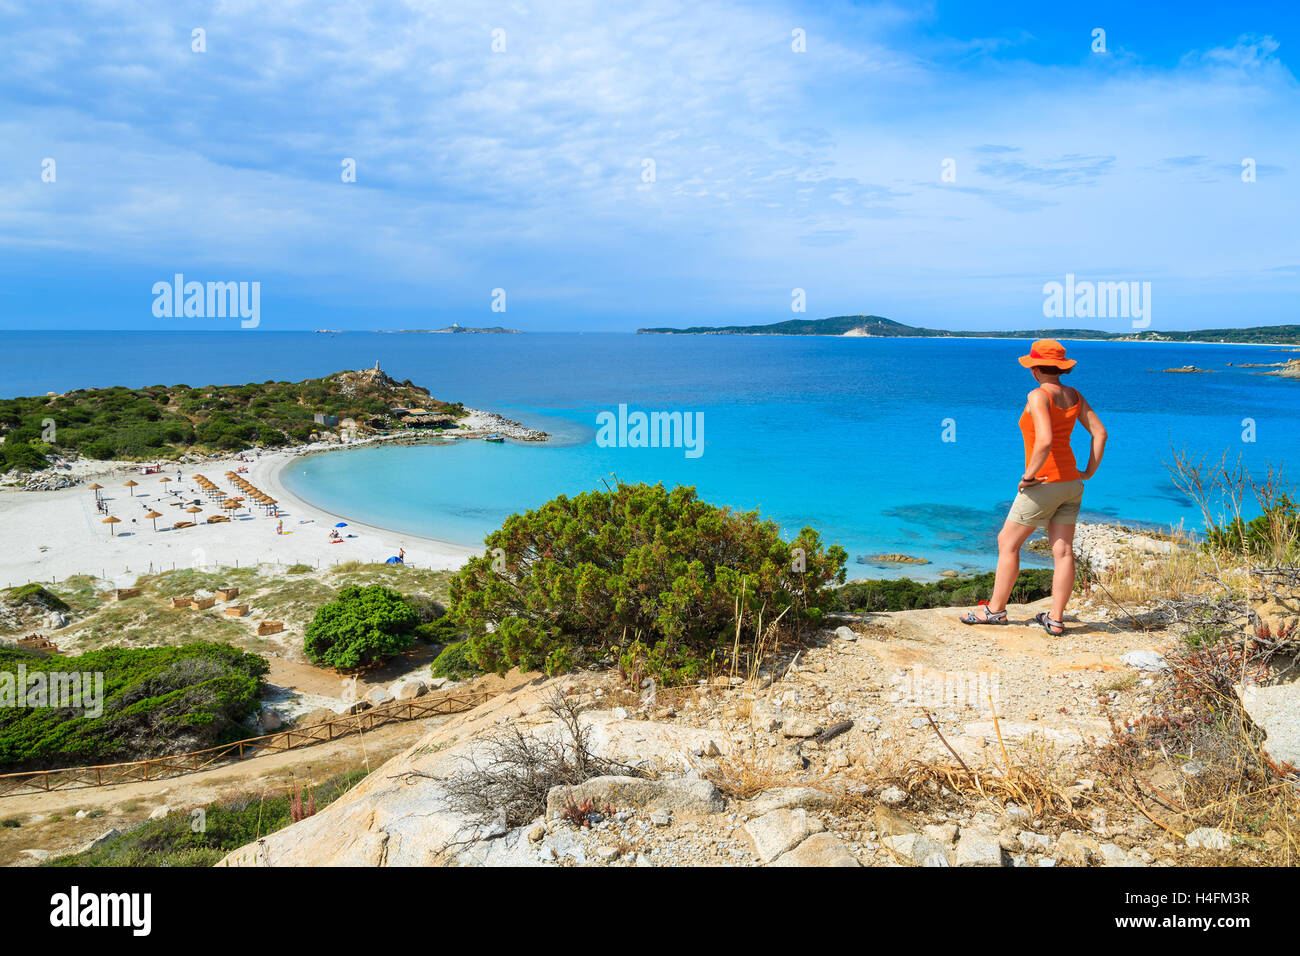 Joven turista de pie en alto vasija de barro con vista de la hermosa bahía con playa de arena en Punta Molentis, Cerdeña, Italia Foto de stock